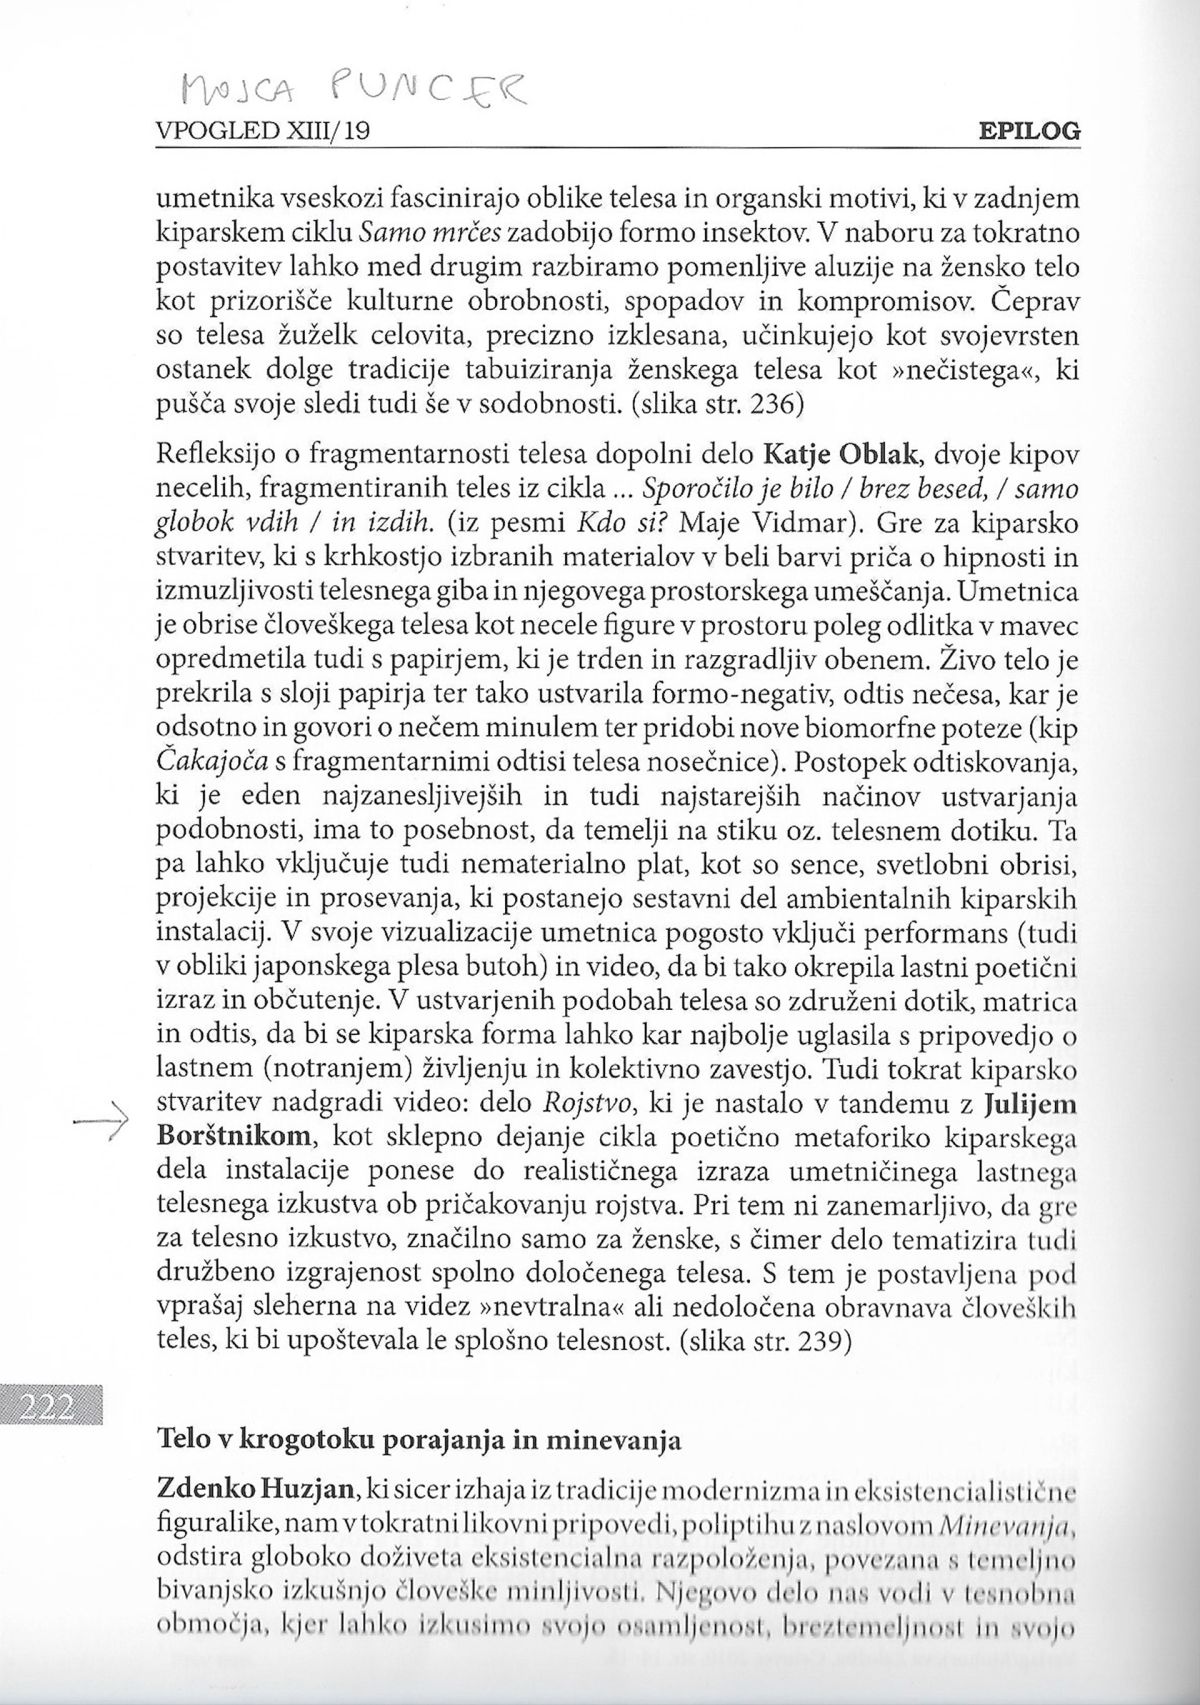 Katalog razstave EPILOG, str.222, sodelovanje z videom Rojstvo, v soavtorstvu s Katjo Oblak. Maj do oktober 2017 v dvorcu Novo Celje.